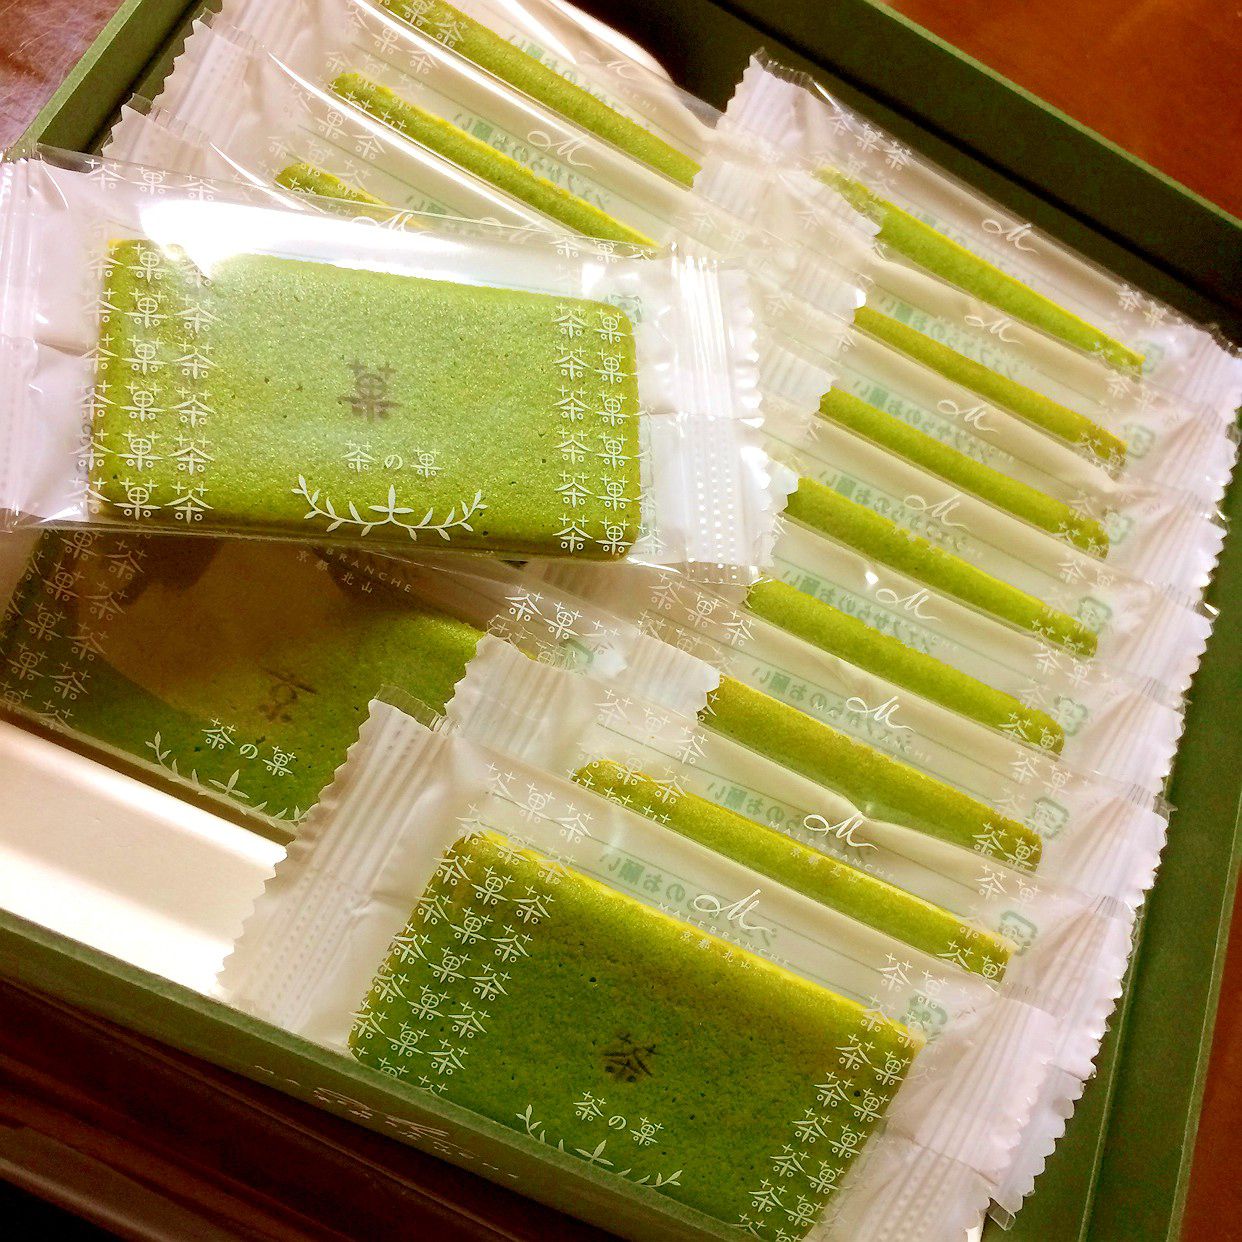 限定商品盛りだくさん 京都に行くなら絶対欲しい 嵐山 のお土産10選 Retrip リトリップ